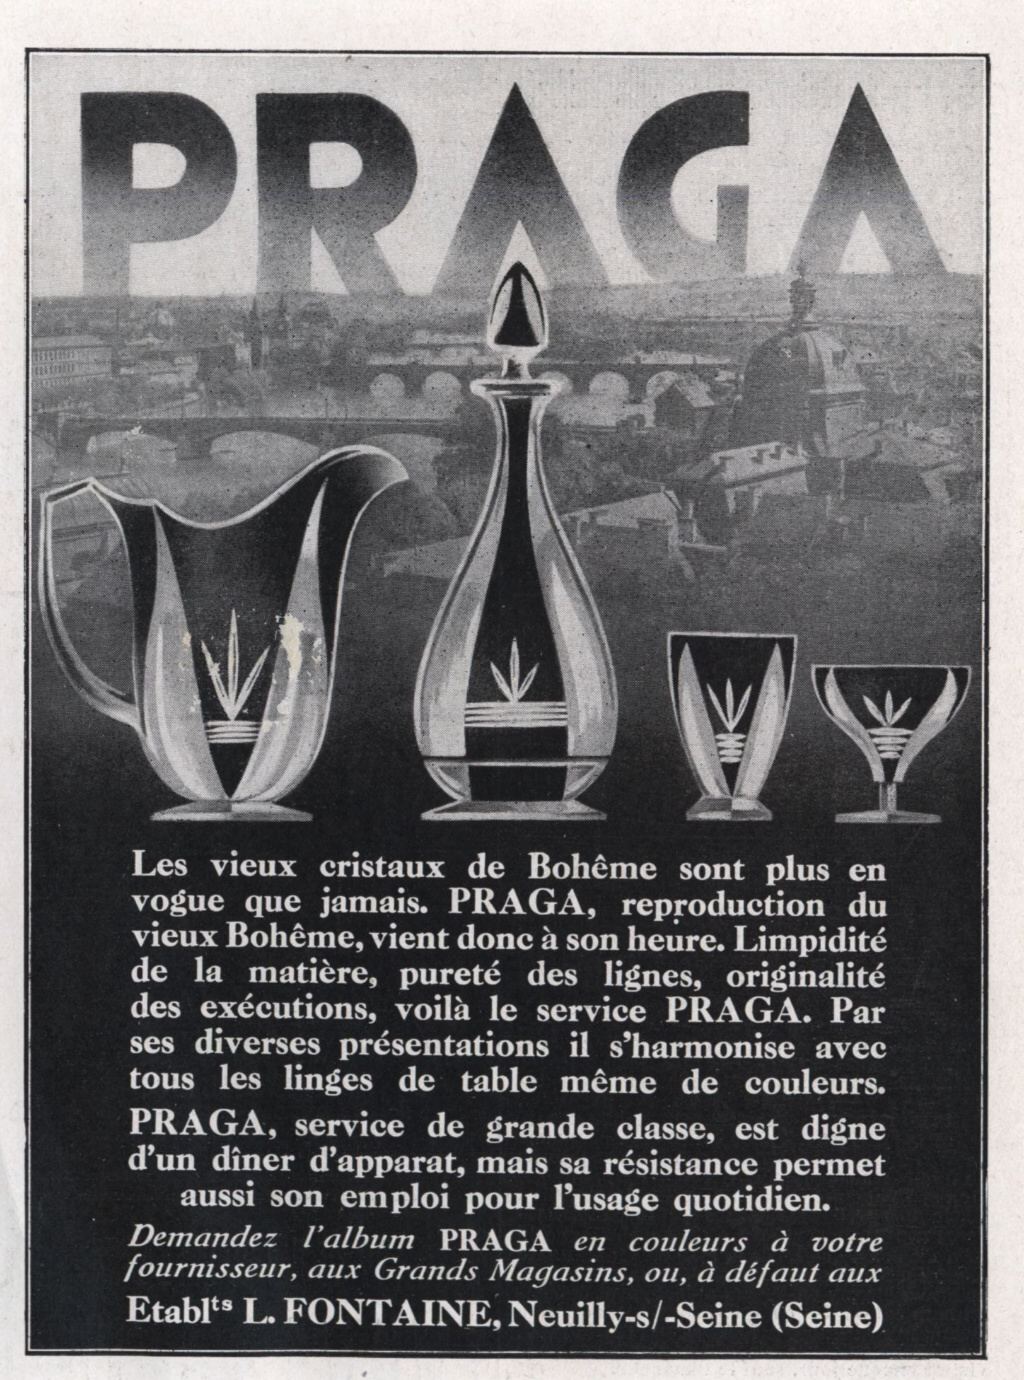 "Collection Praga 1932"